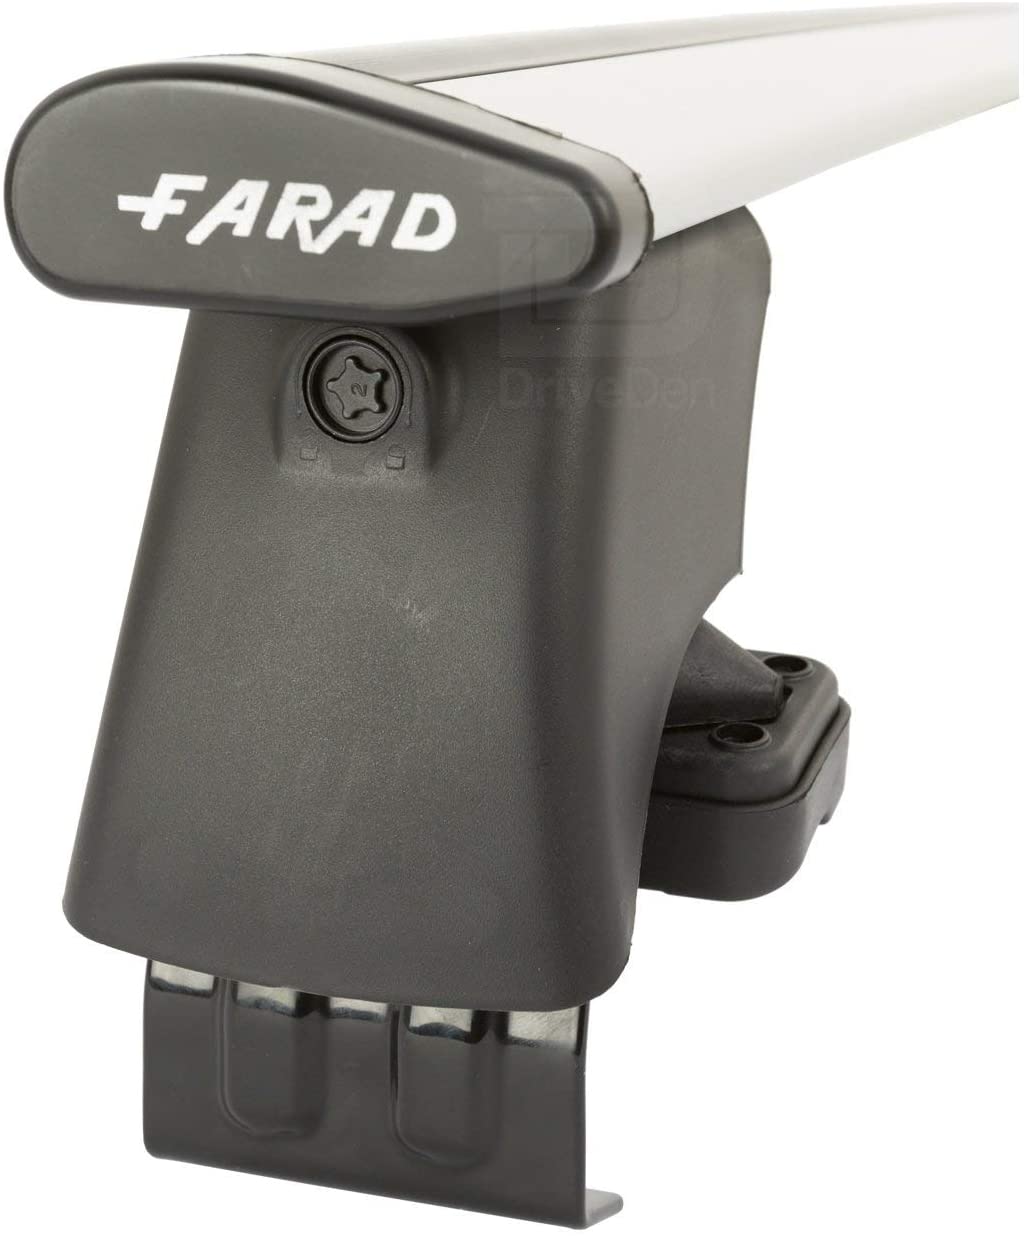 FARAD-Kit H2 per barre portatutto - Seat Ibiza 2008-2017 (senza corrimano)